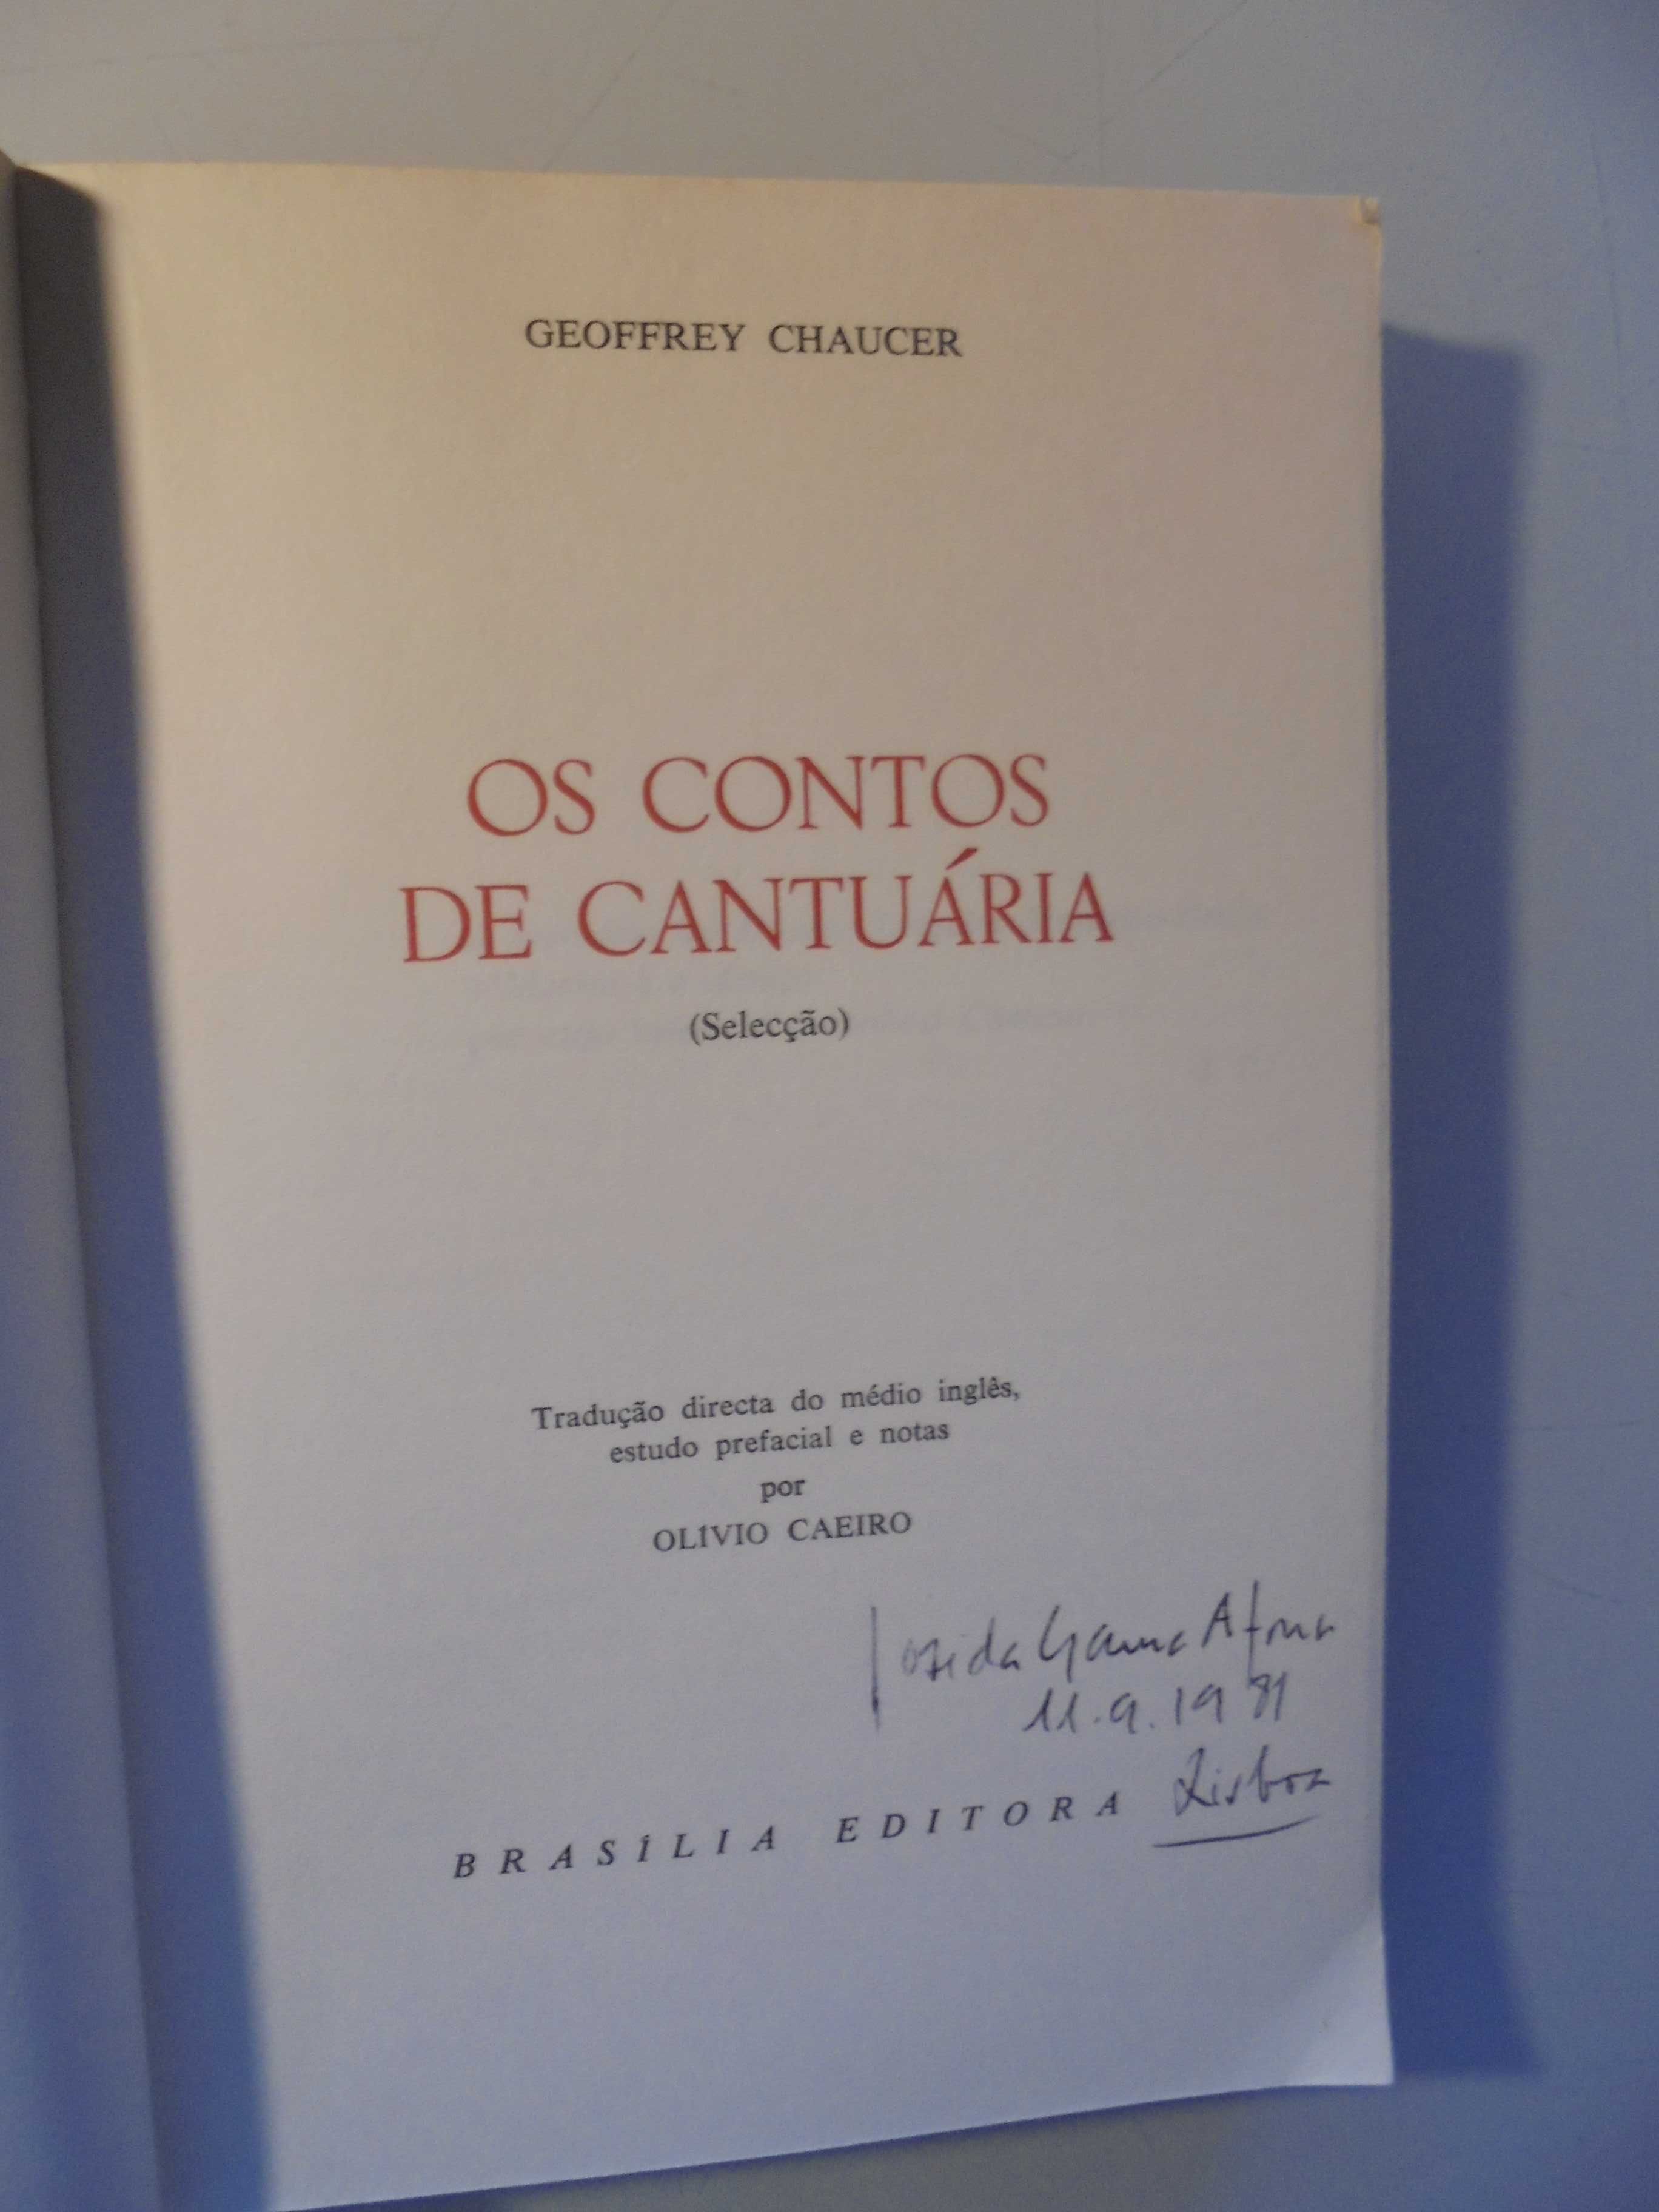 Caeiro (Olívio);Geoffrey Chaucer-Os Contos de Cantuária